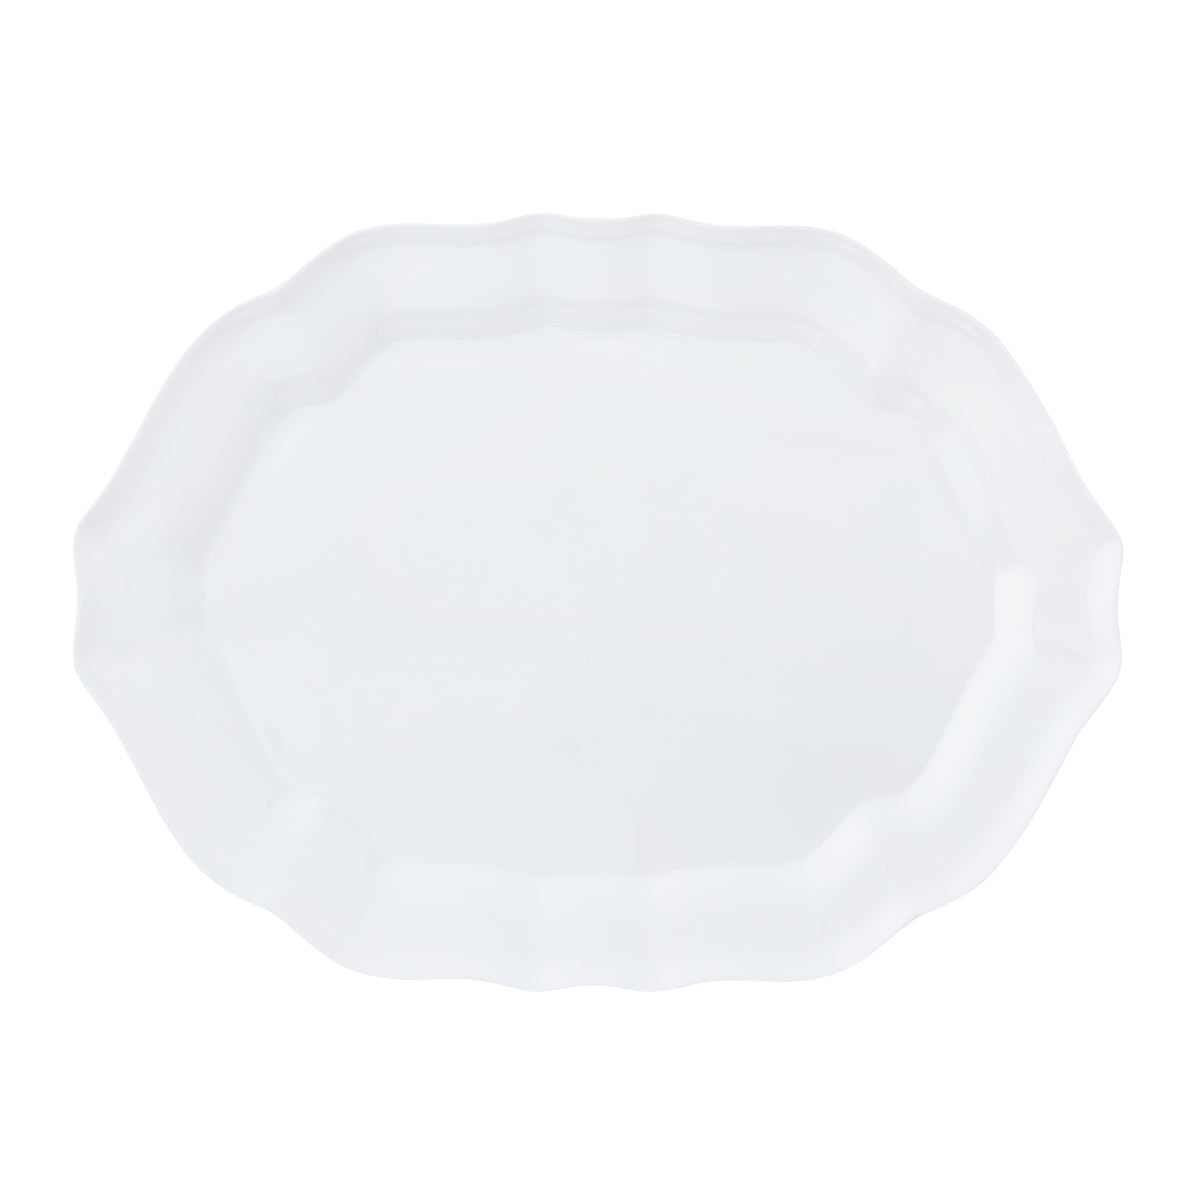 Melamine Oval Platter 16" - Basque White